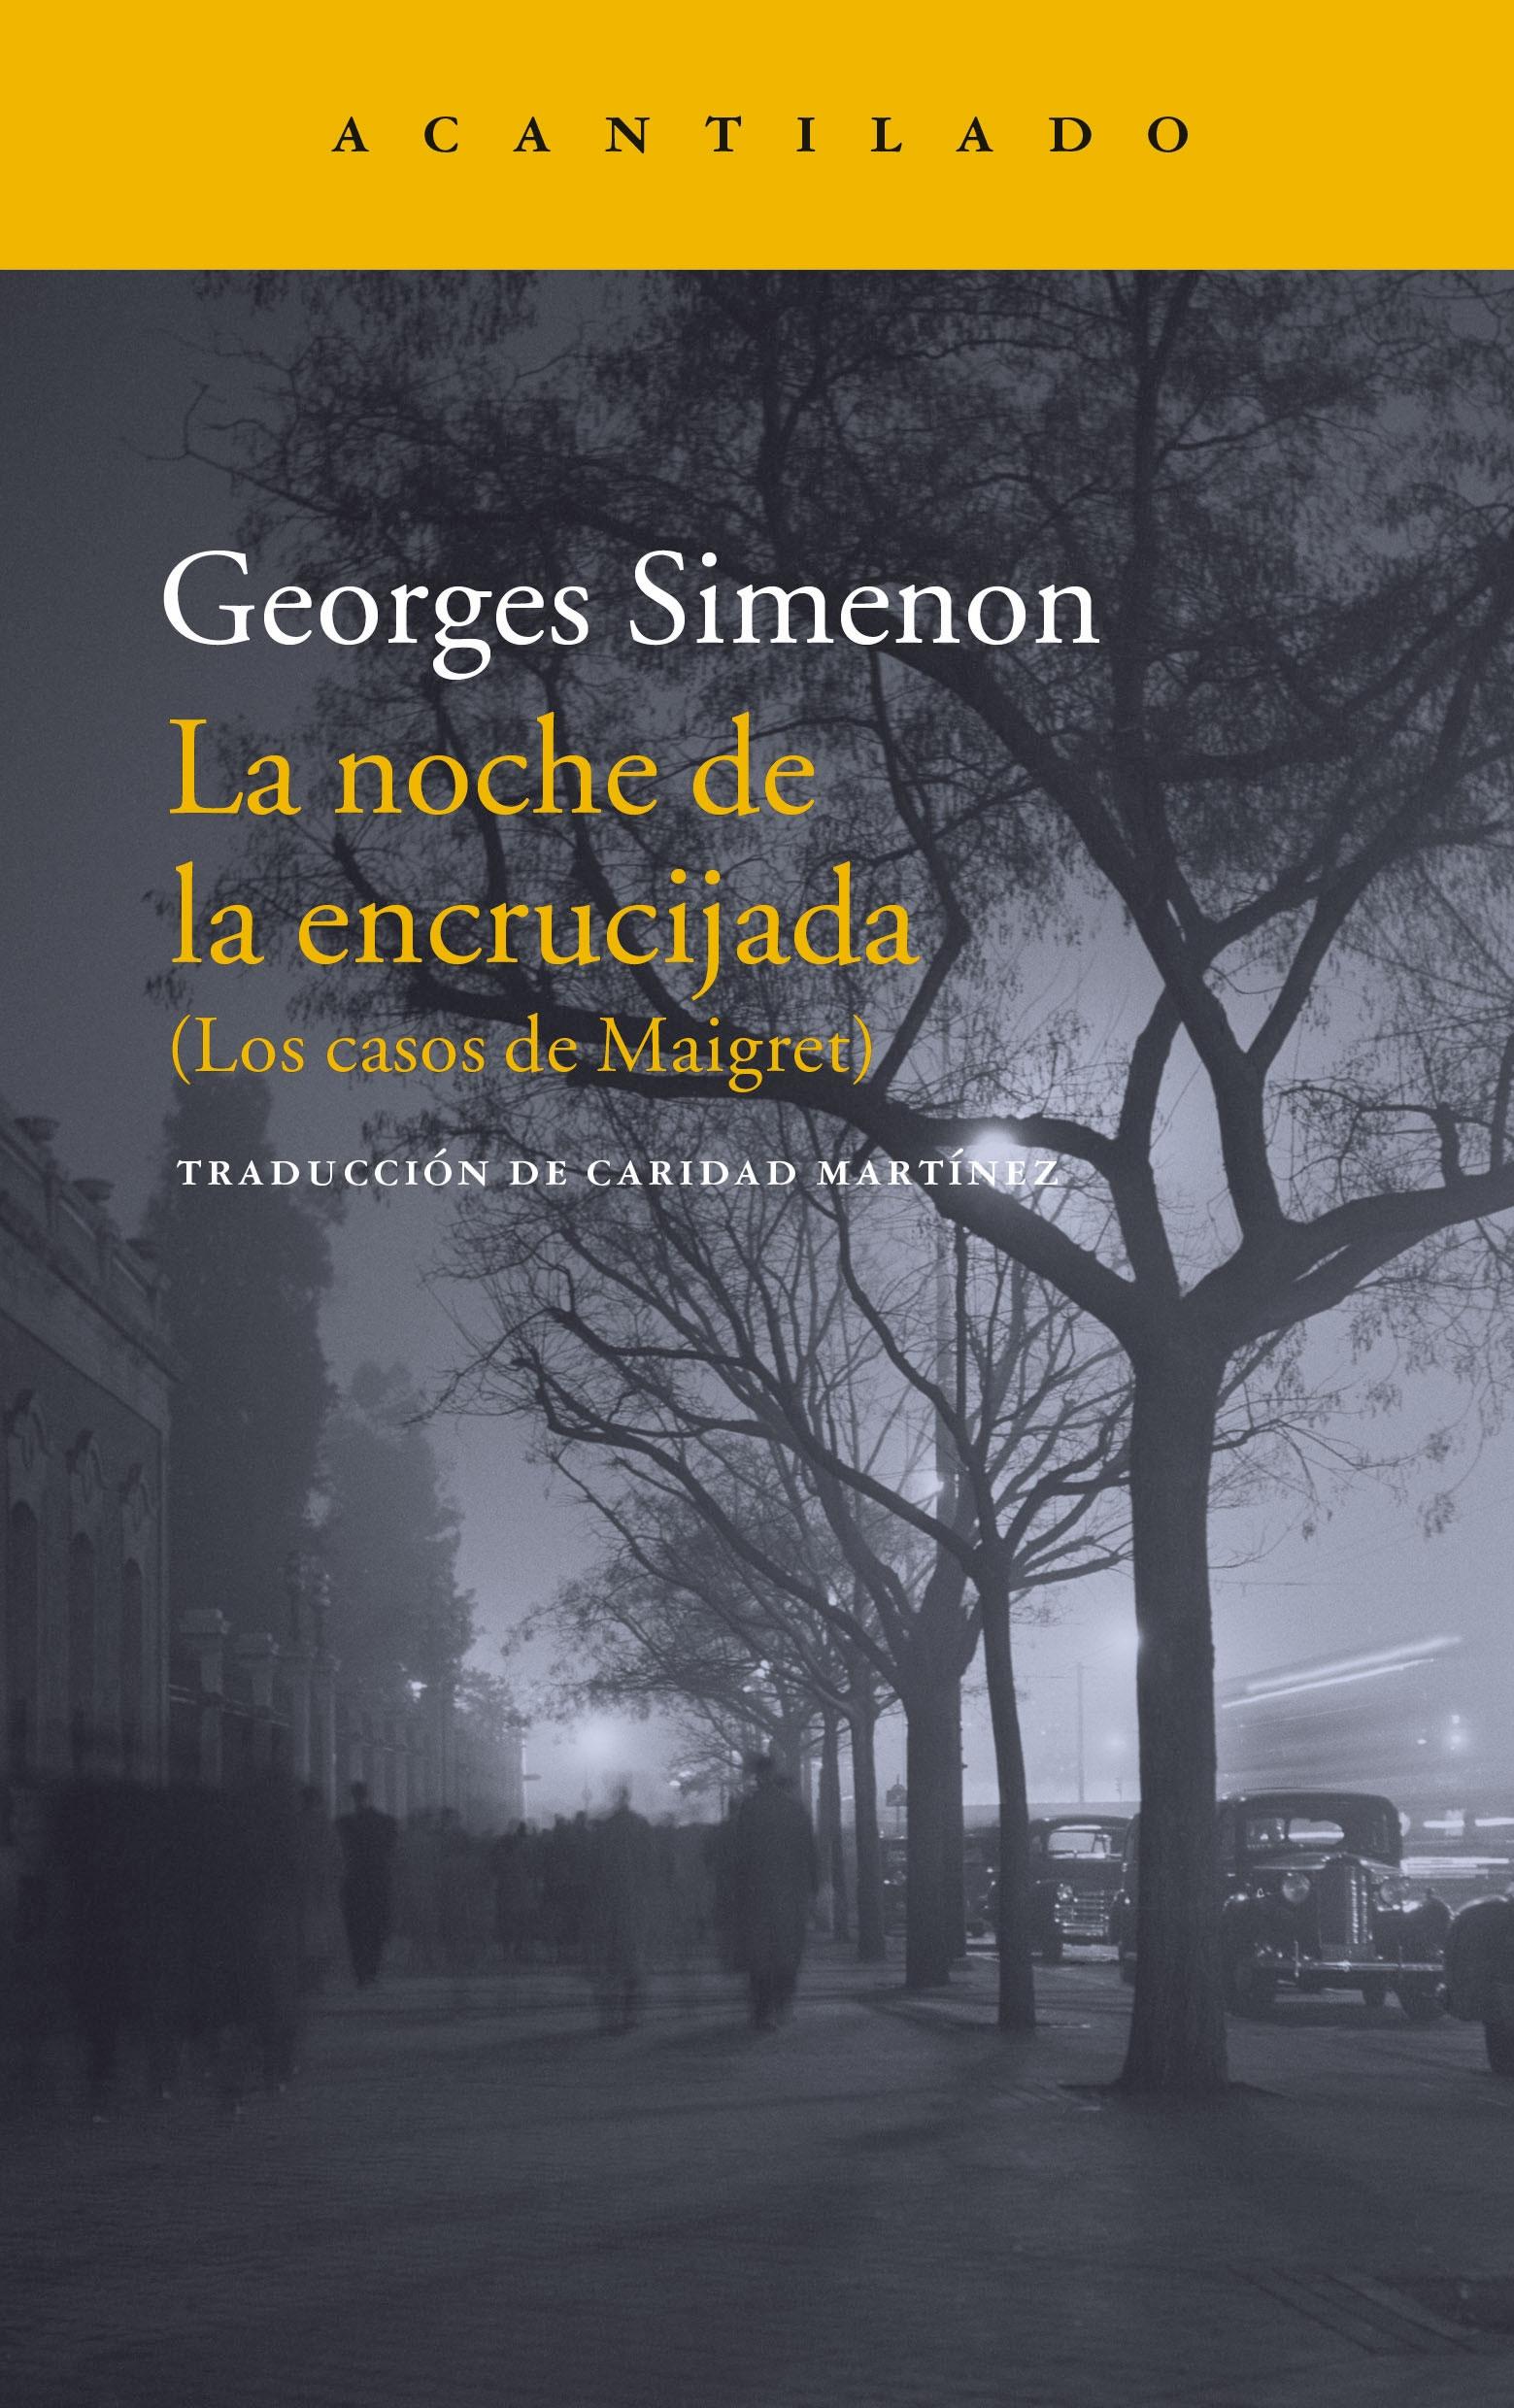 La Noche en la Encrucijada "(Los Casos de Maigret)"